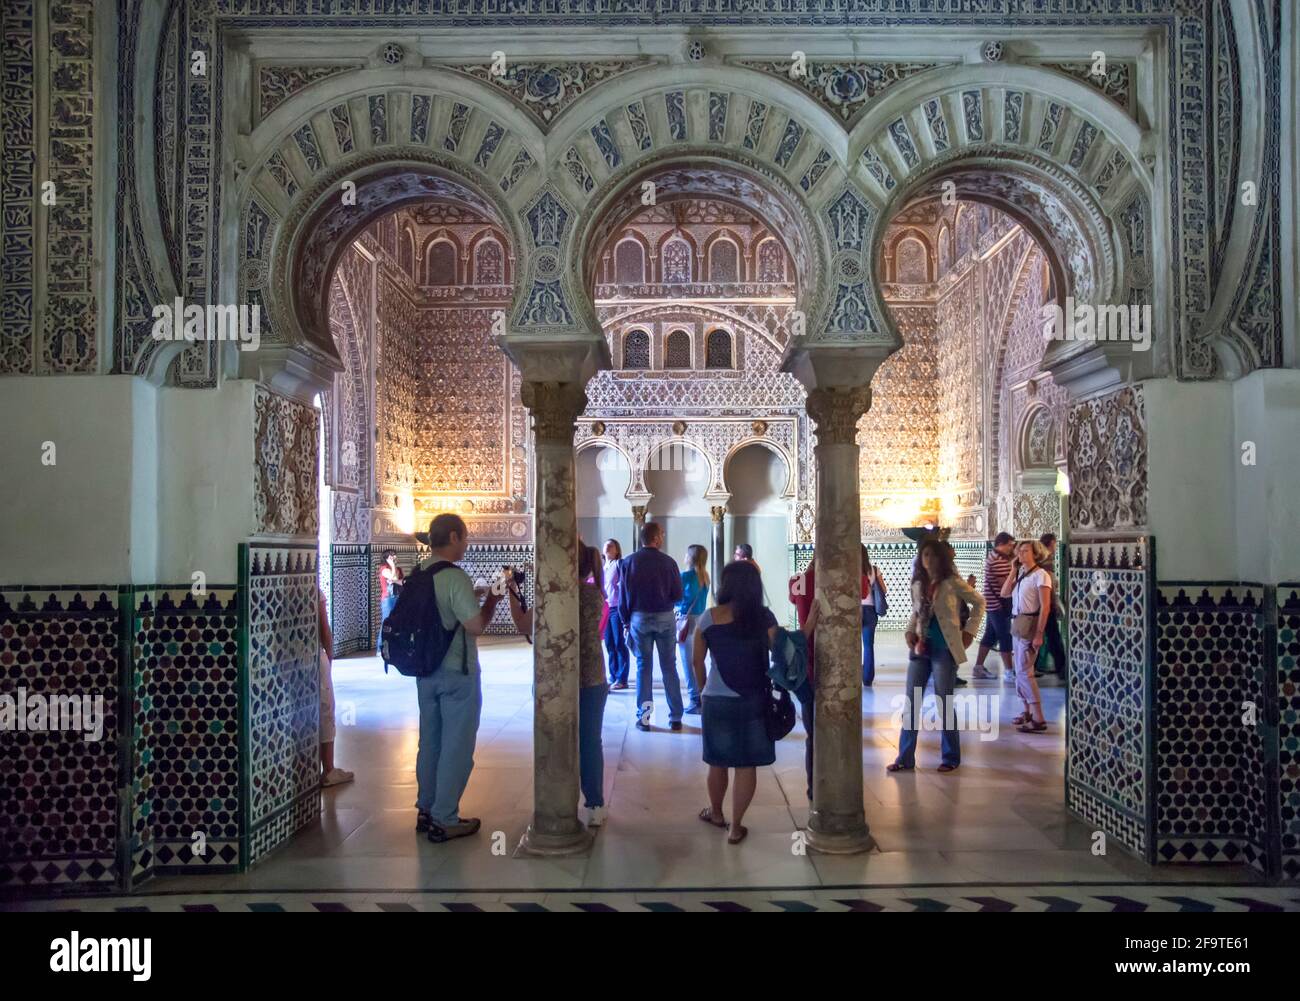 Archi islamici nel palazzo moresco all'interno dell'Alcazar reale di Siviglia, Siviglia, Spagna Foto Stock